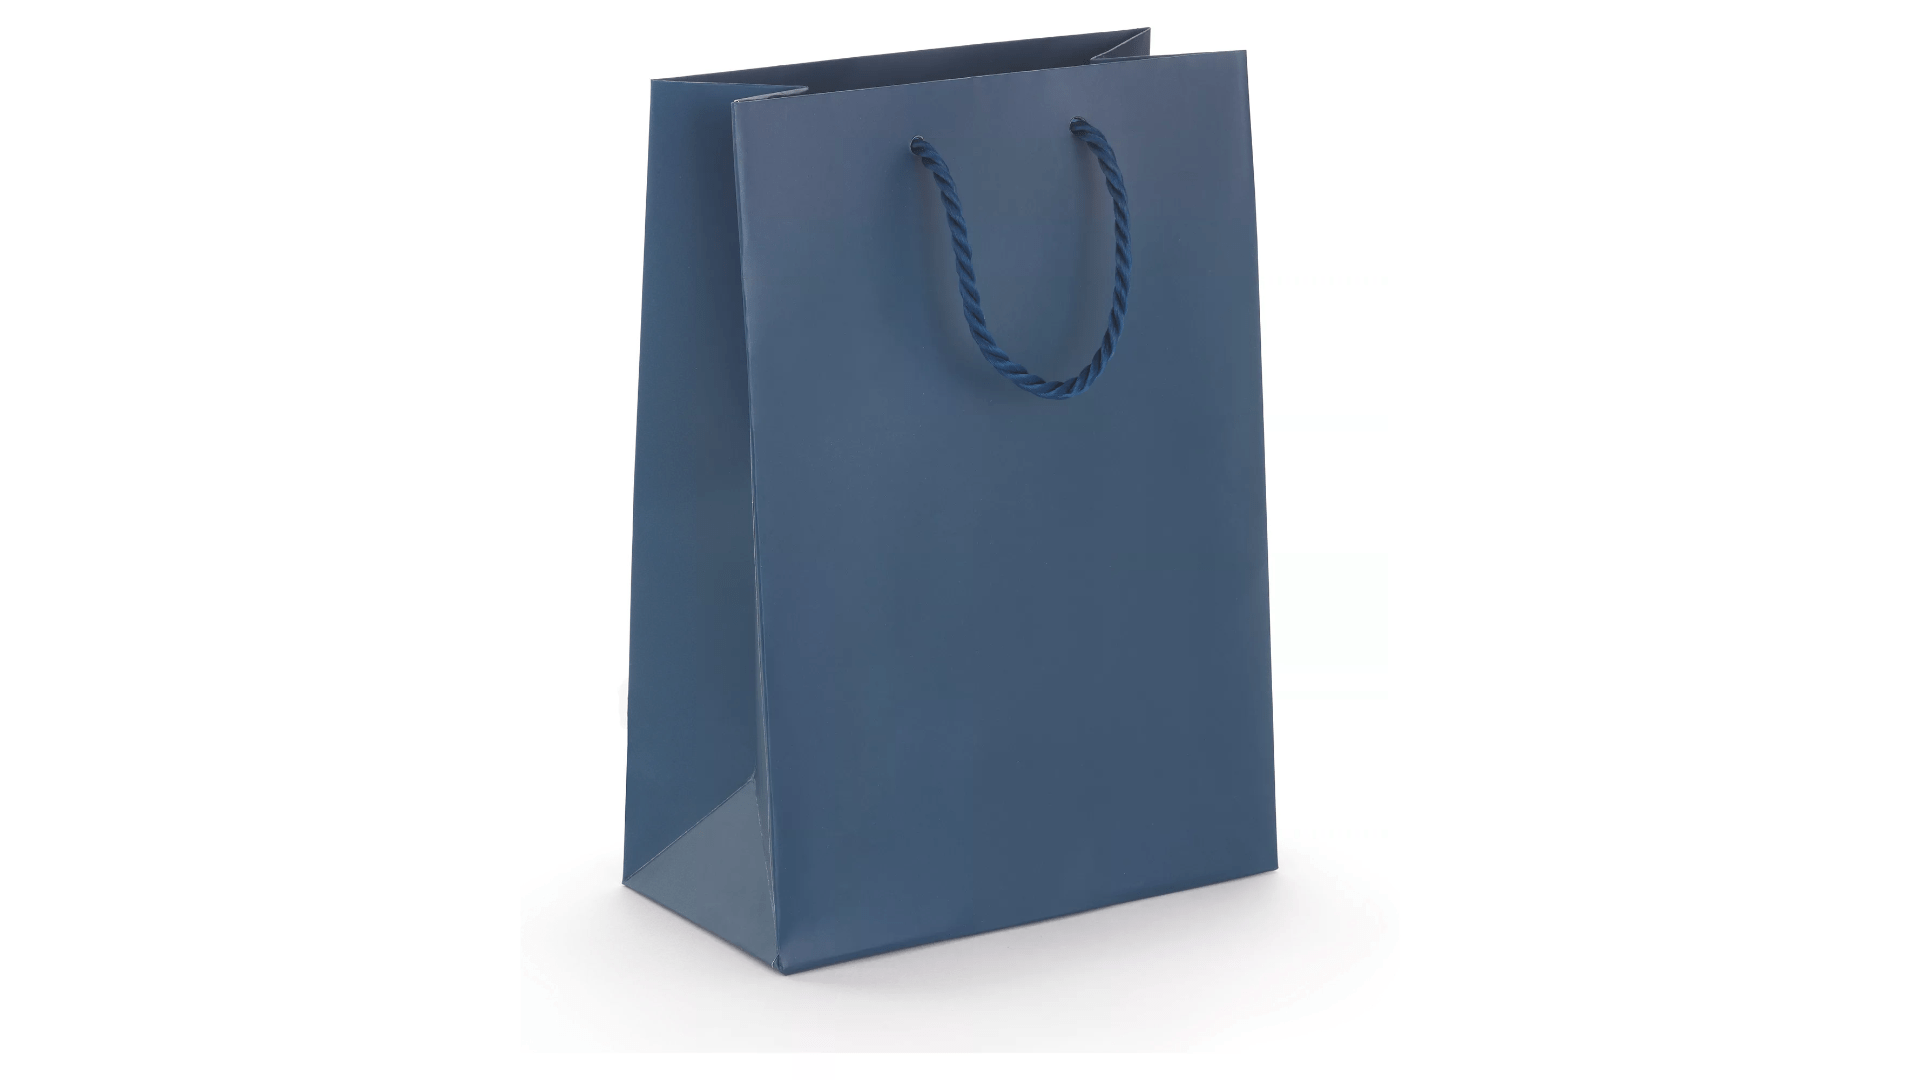 Darčeková taška - stredná, modrá